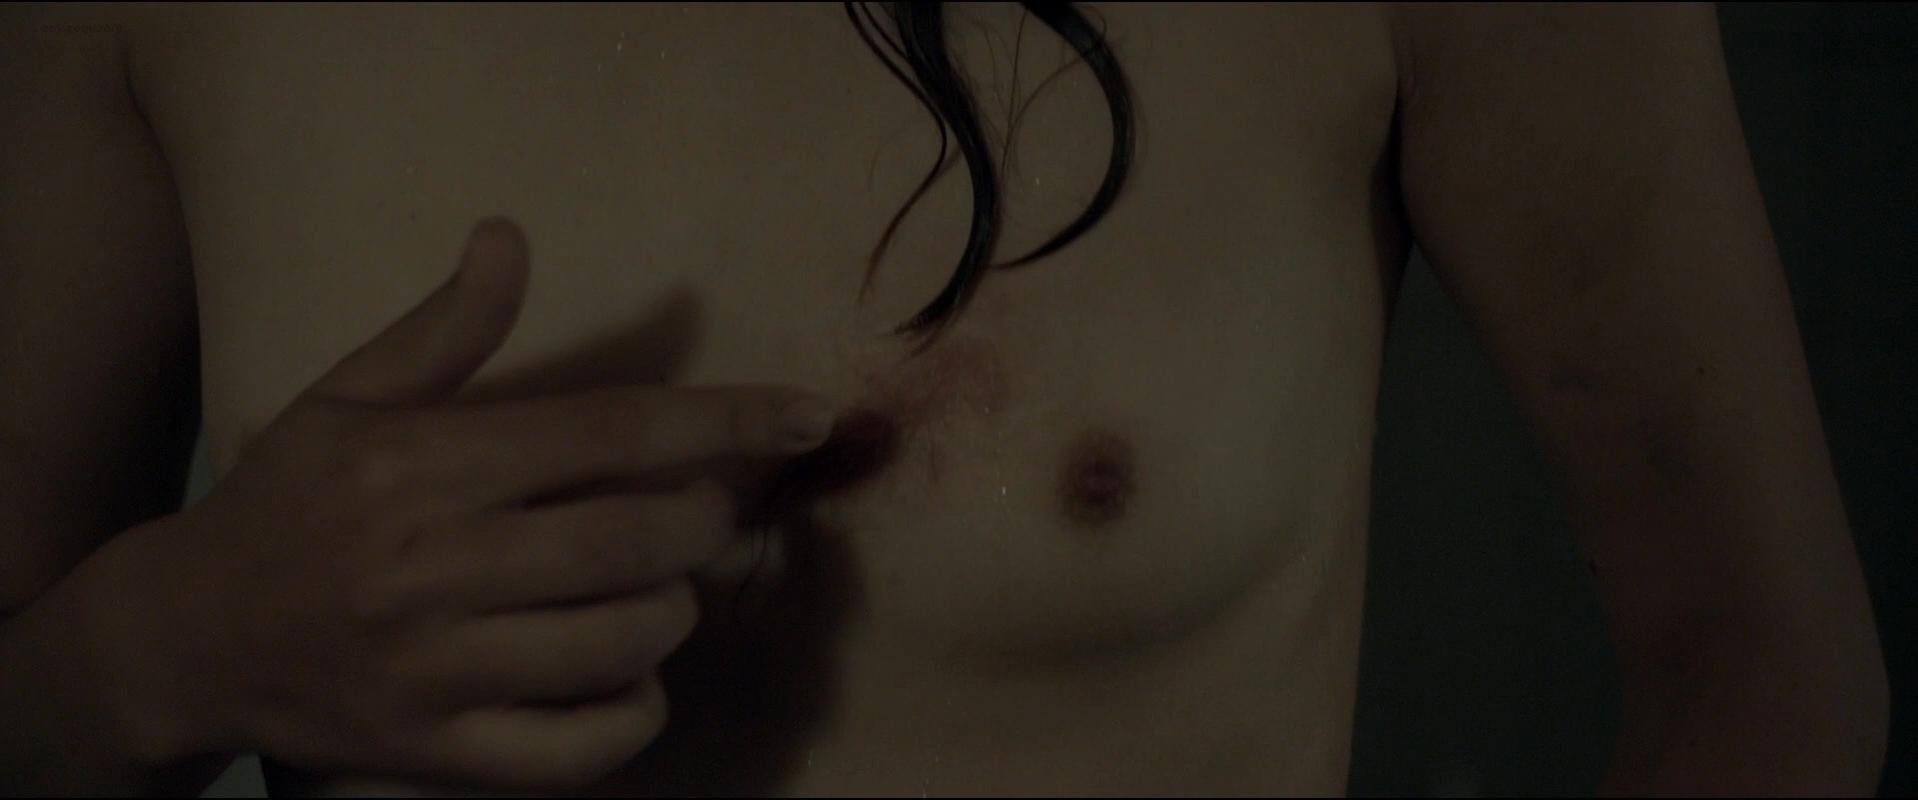 Sonia Suhl nude - When Animals Dream (2014)